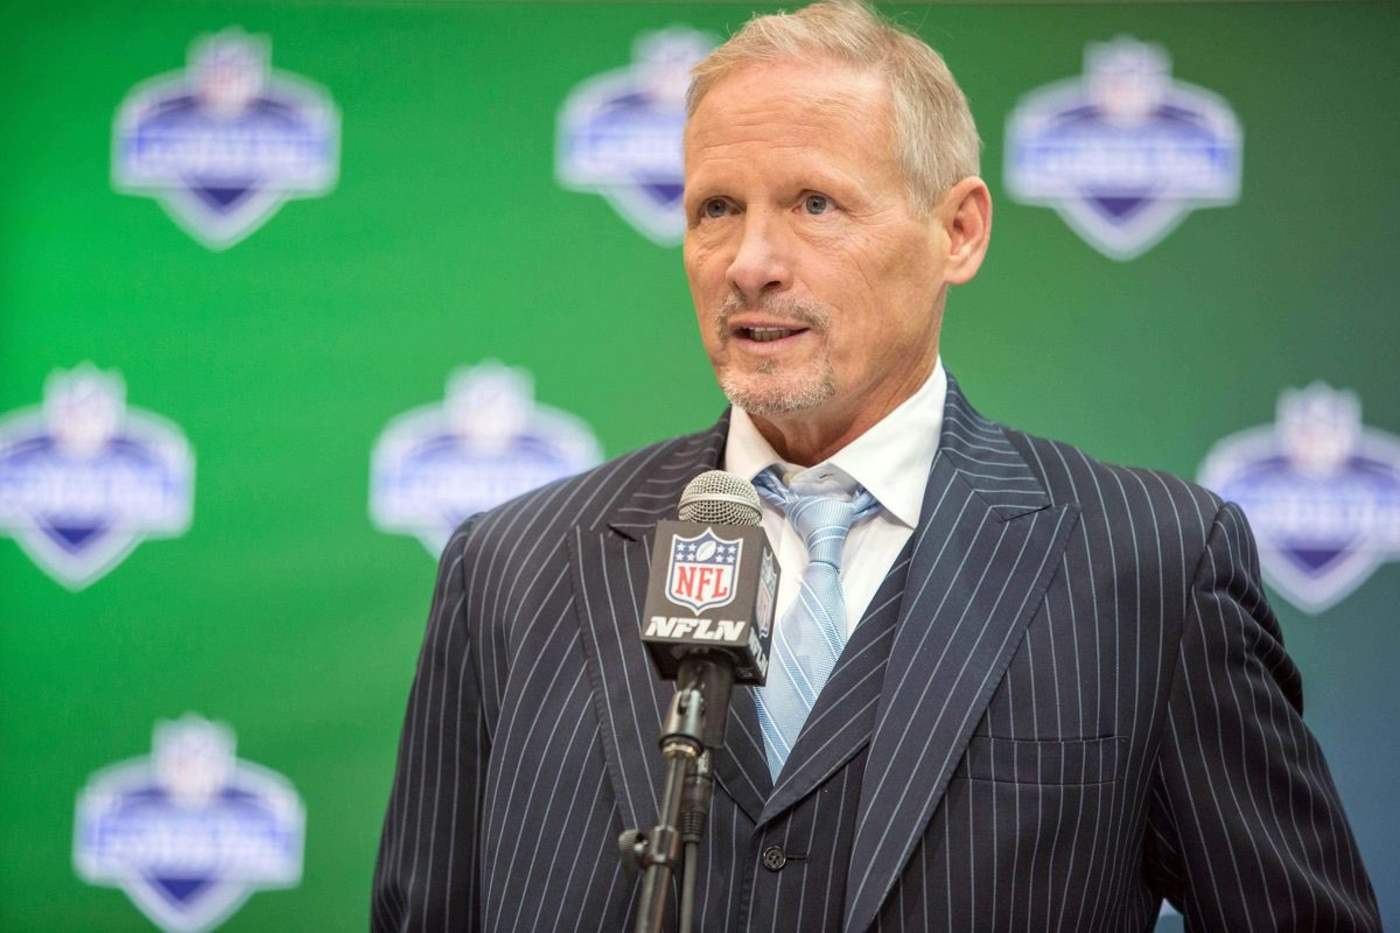 Los Raiders contrataron el lunes al experto en materia del draft de NFL Network, Mike Mayock, como su nuevo gerente general.  (ESPECIAL)